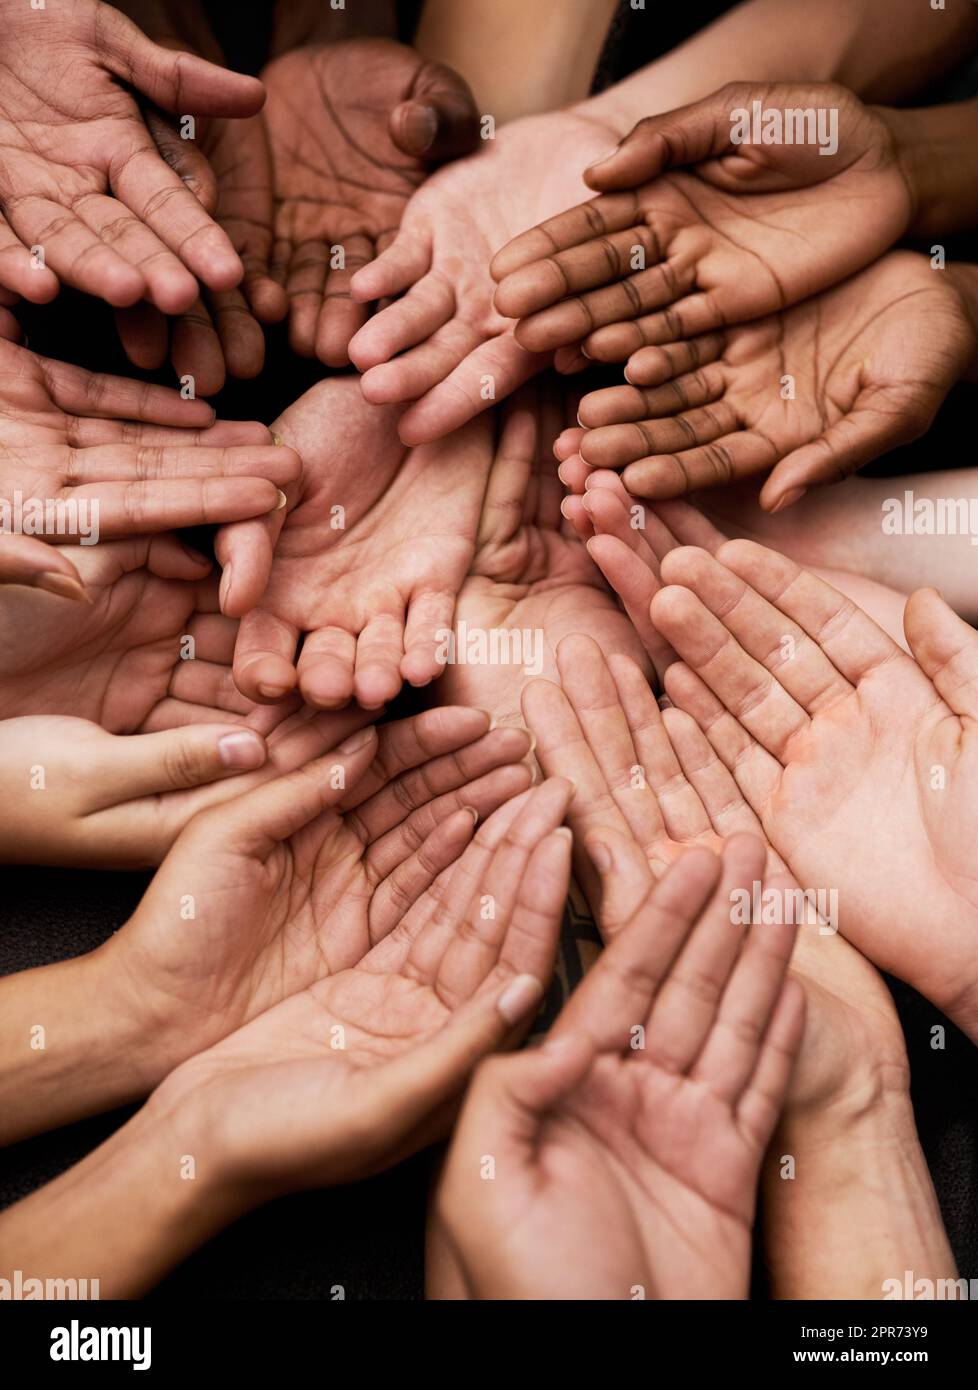 Wir brauchen Ihre Unterstützung. Aufnahme einer Gruppe von Händen, die zusammengehalten wurden. Stockfoto